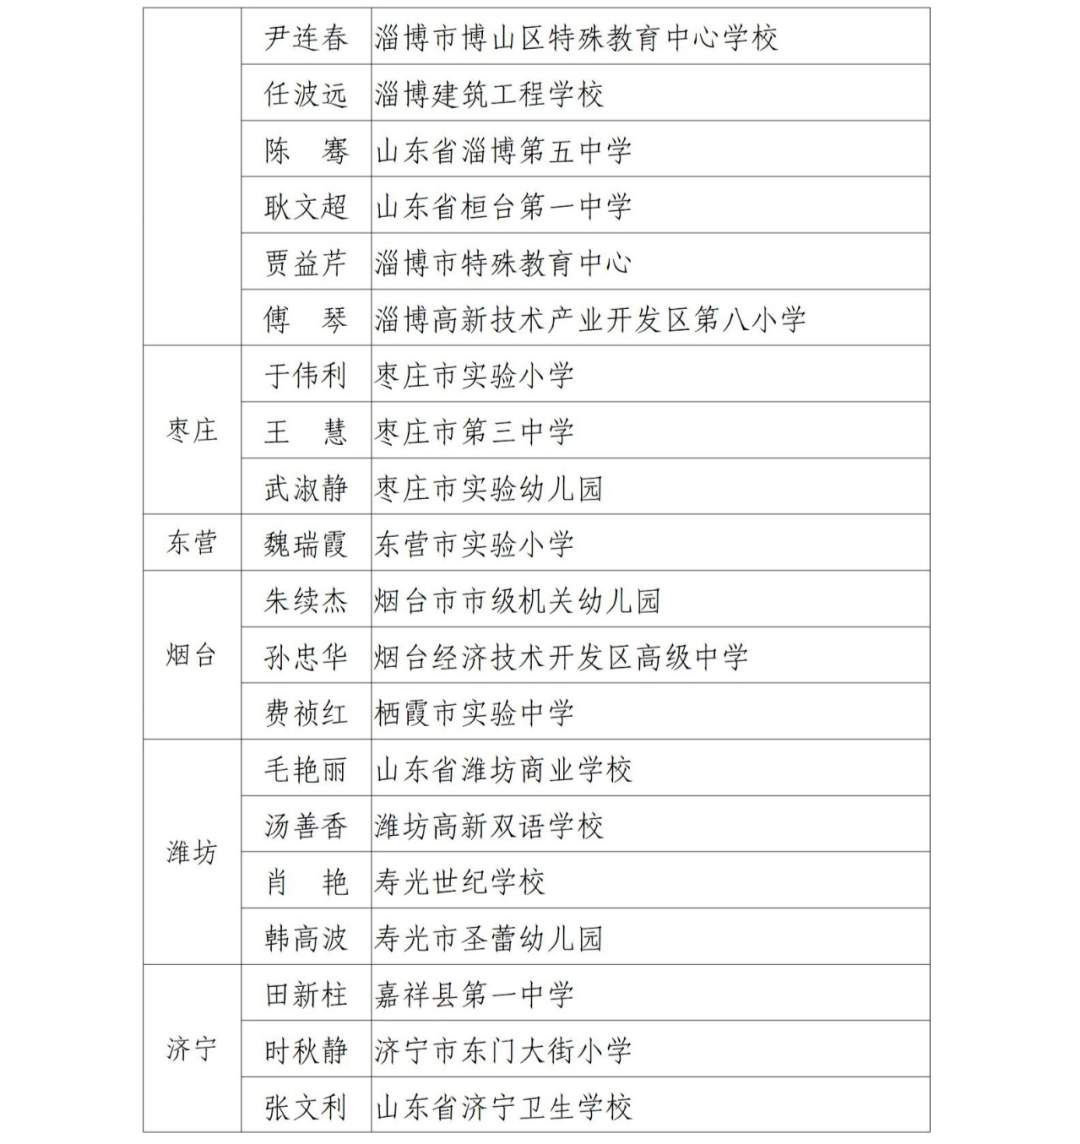 齐鲁教育名家培育工程（2023-2026）人选遴选结果公示，济南这些人入选